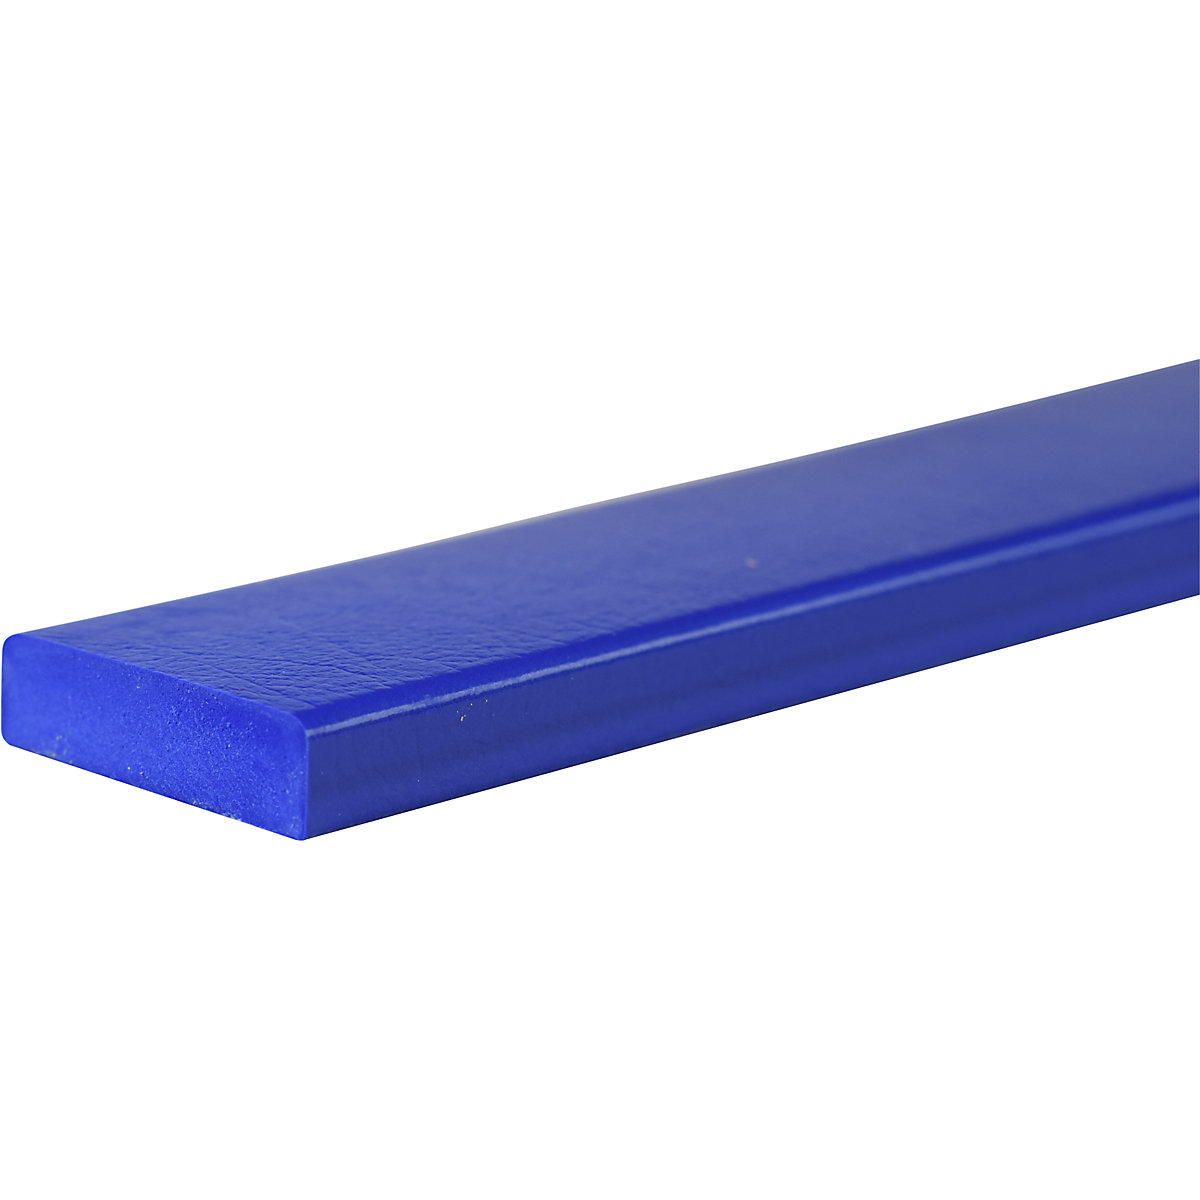 Knuffi®-oppervlaktebescherming – SHG, type S, stuk van 1 m, blauw-27